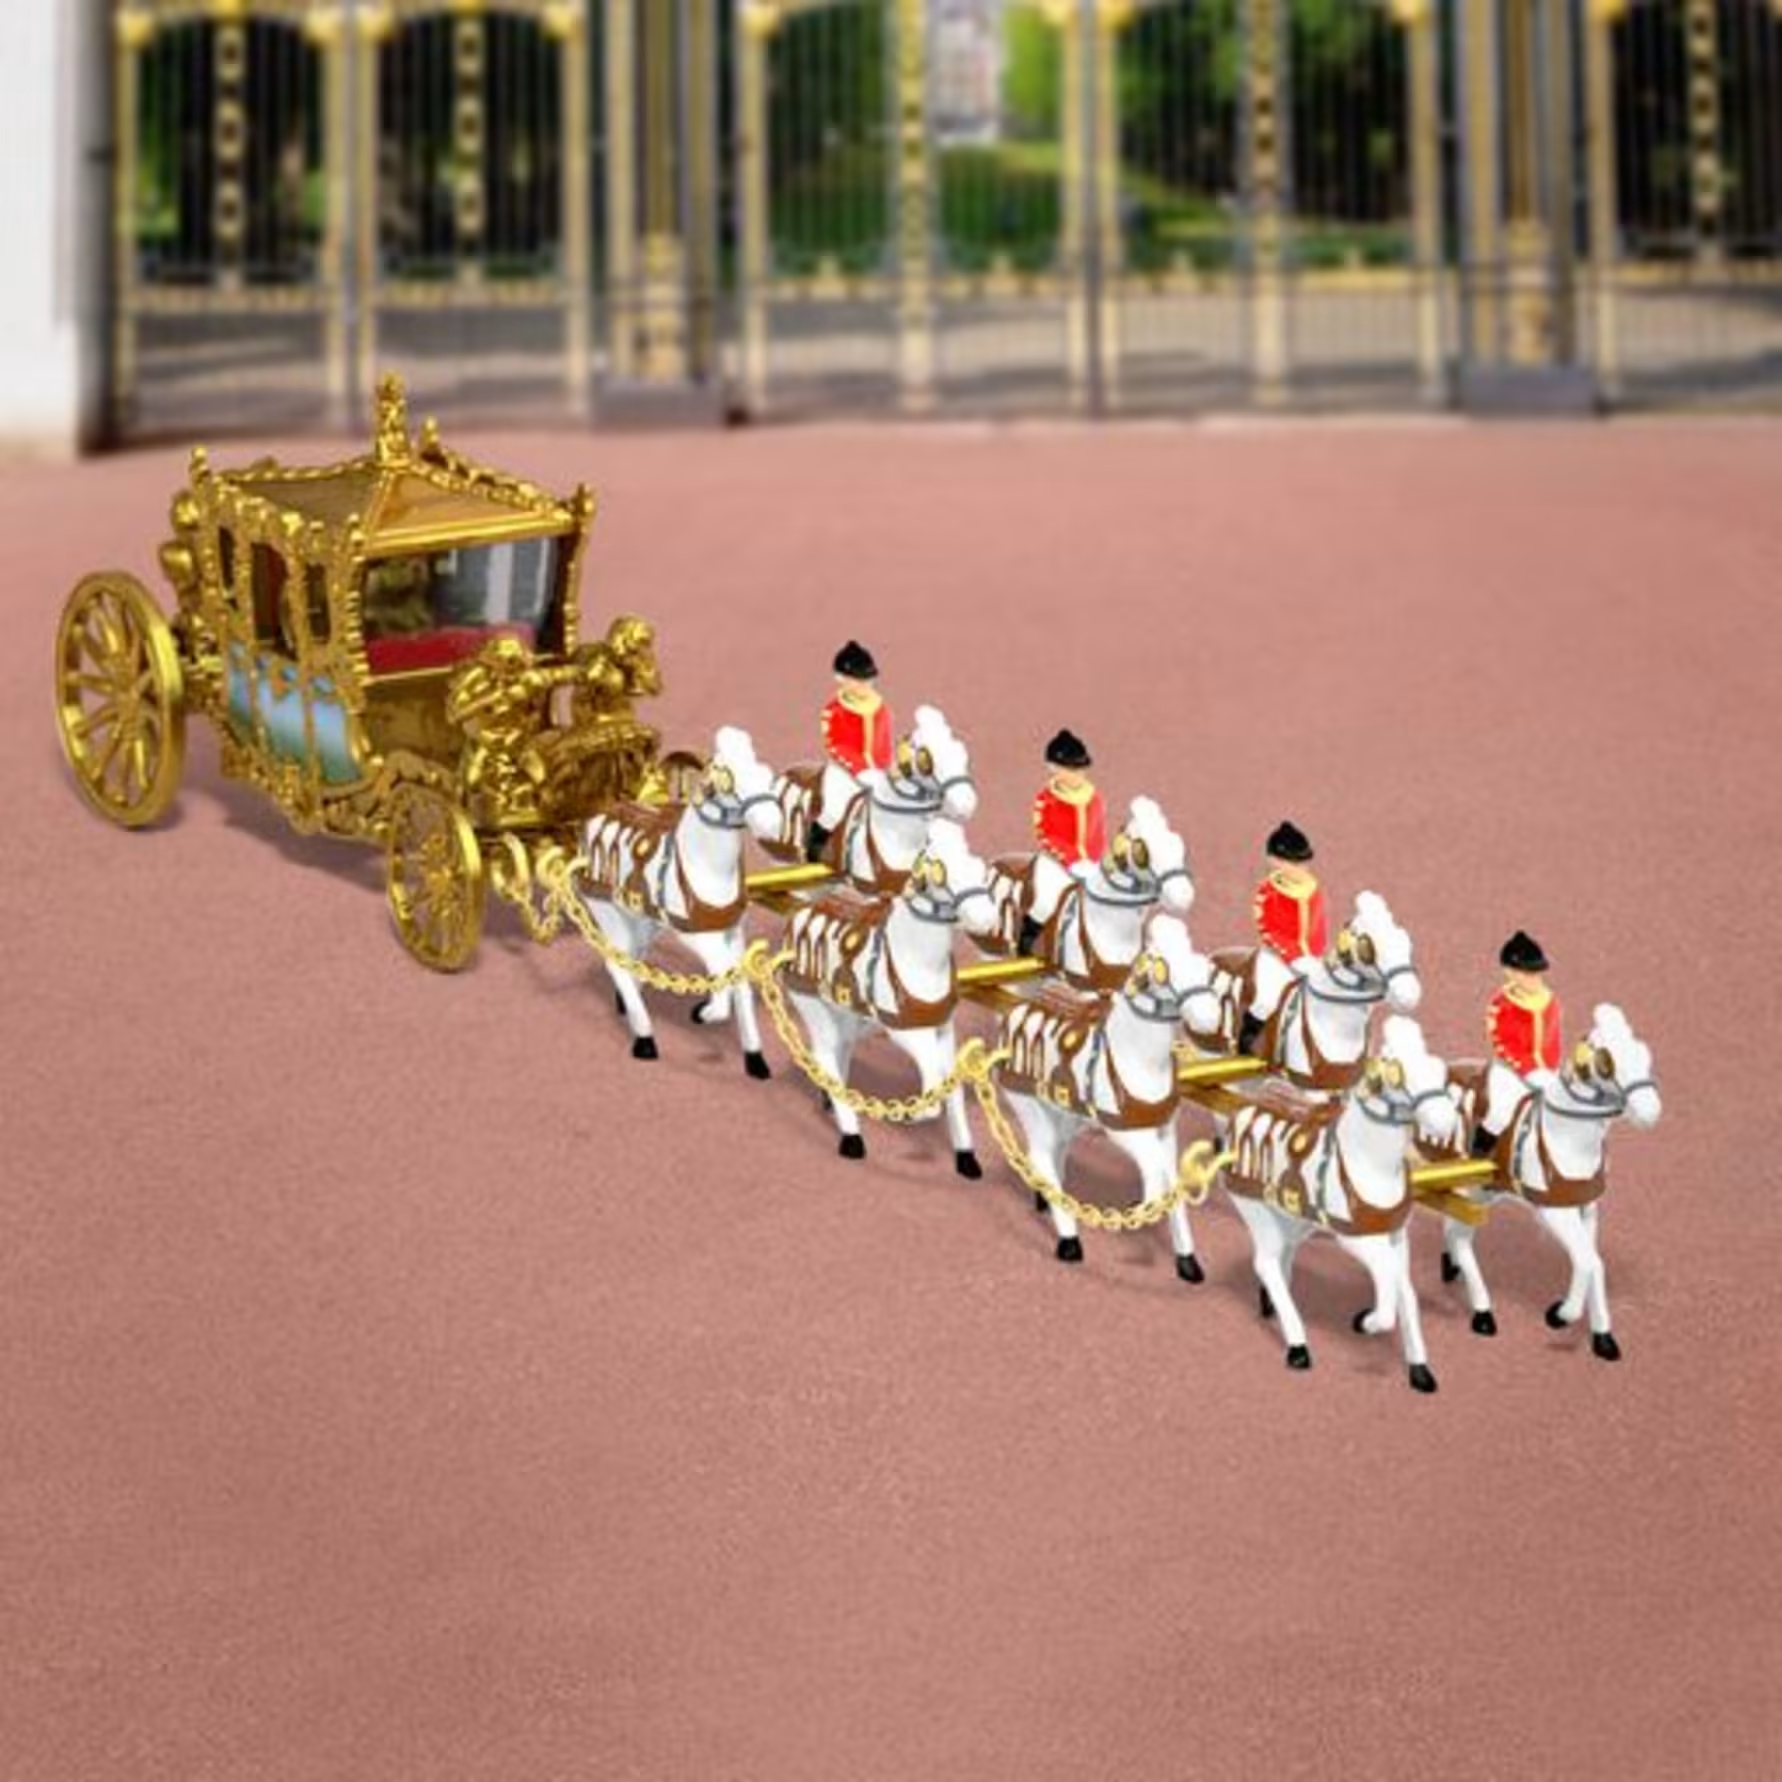 Matchbox neu aufgelegt: Goldene Staatskutsche zur Krönung von König Charles III